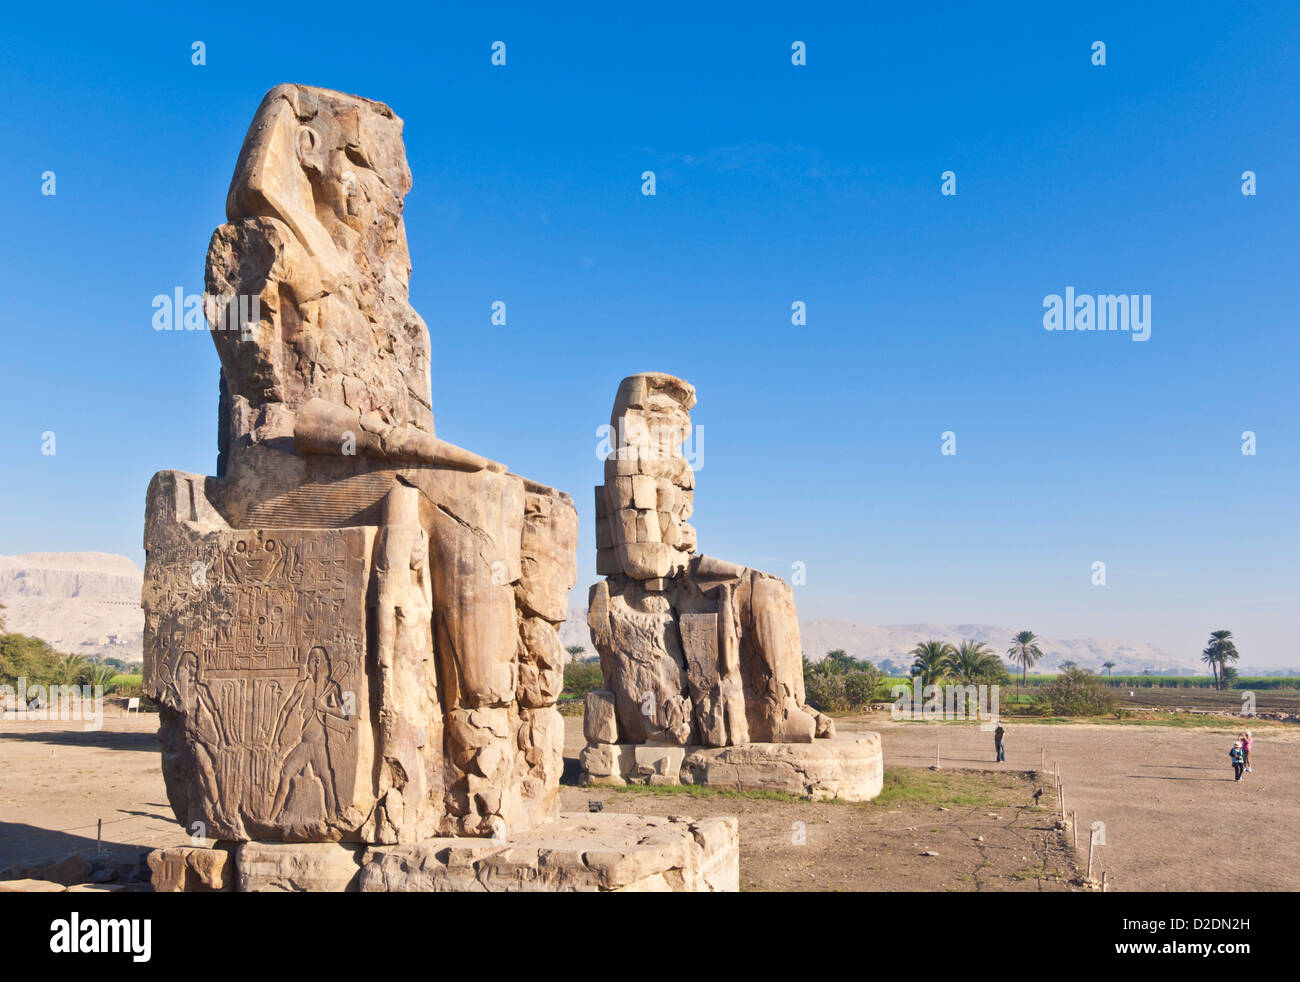 Deux statues gigantesques connu sous le nom de colosses de Memnon rive ouest de Louxor Egypte Moyen Orient Banque D'Images